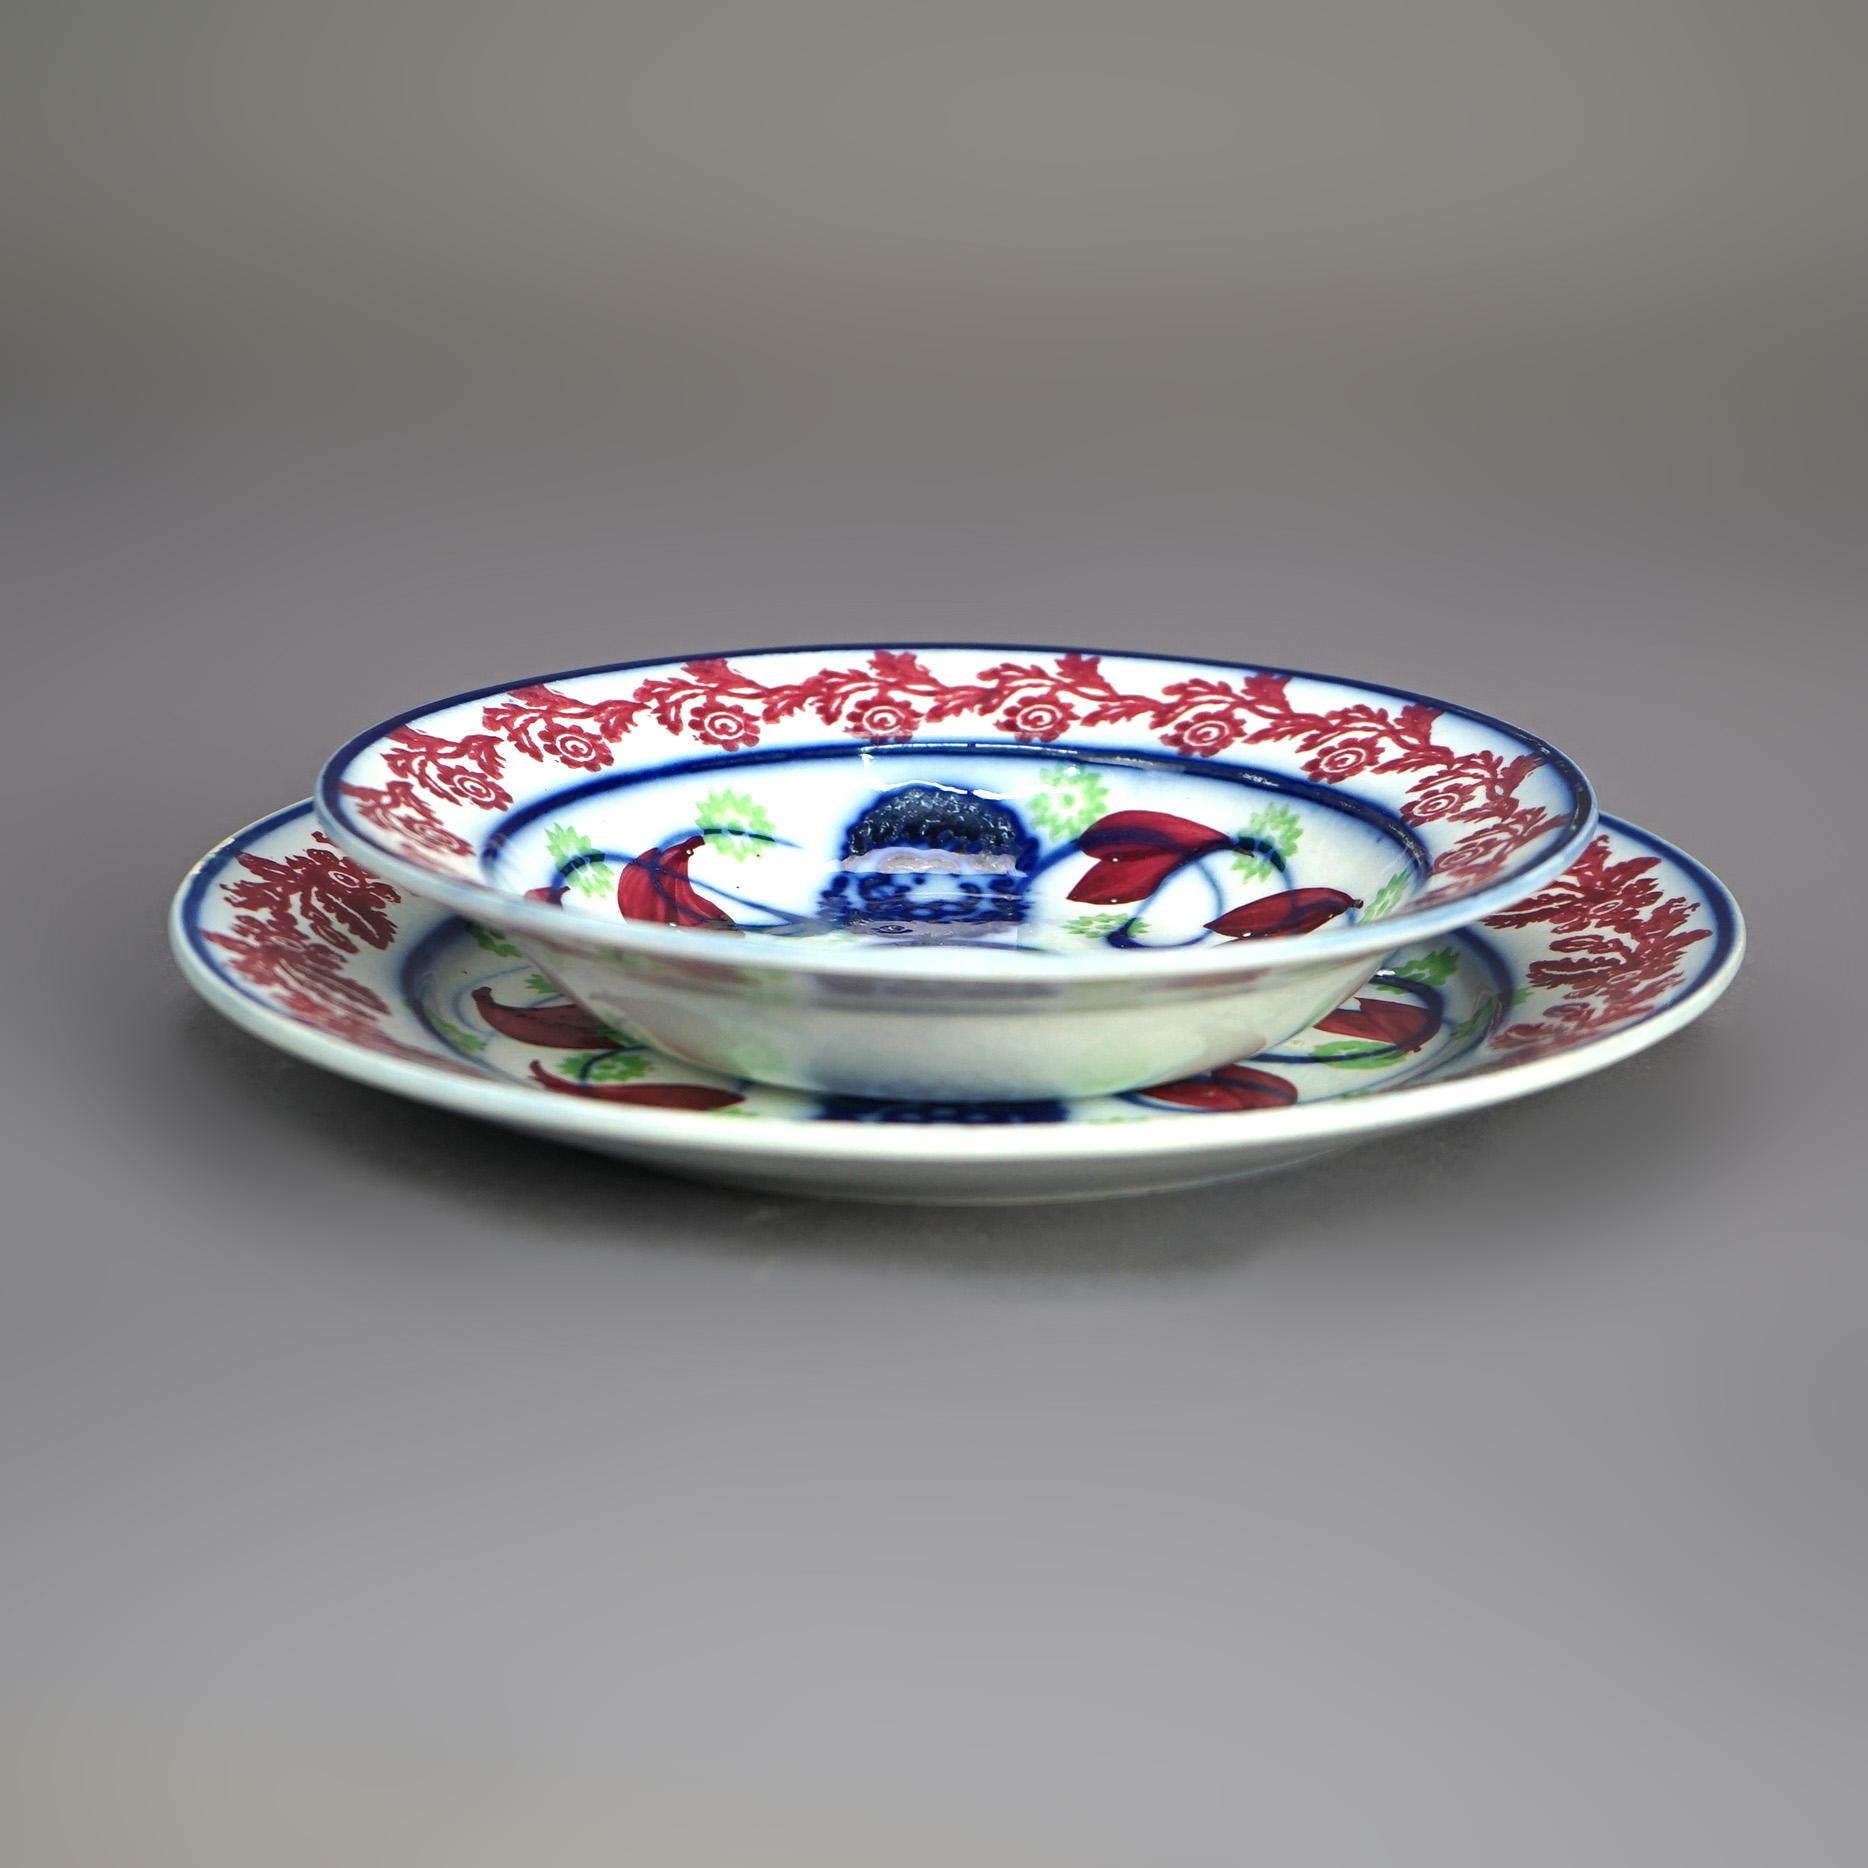 Antique Floral Polychromed Porcelain Sponge Bowl & Underplate C1850

Measures- Plate: 9.25''H x 9.25''W x 1''D; Bowl: 7.5''H x 7.5''W x 1.5''D